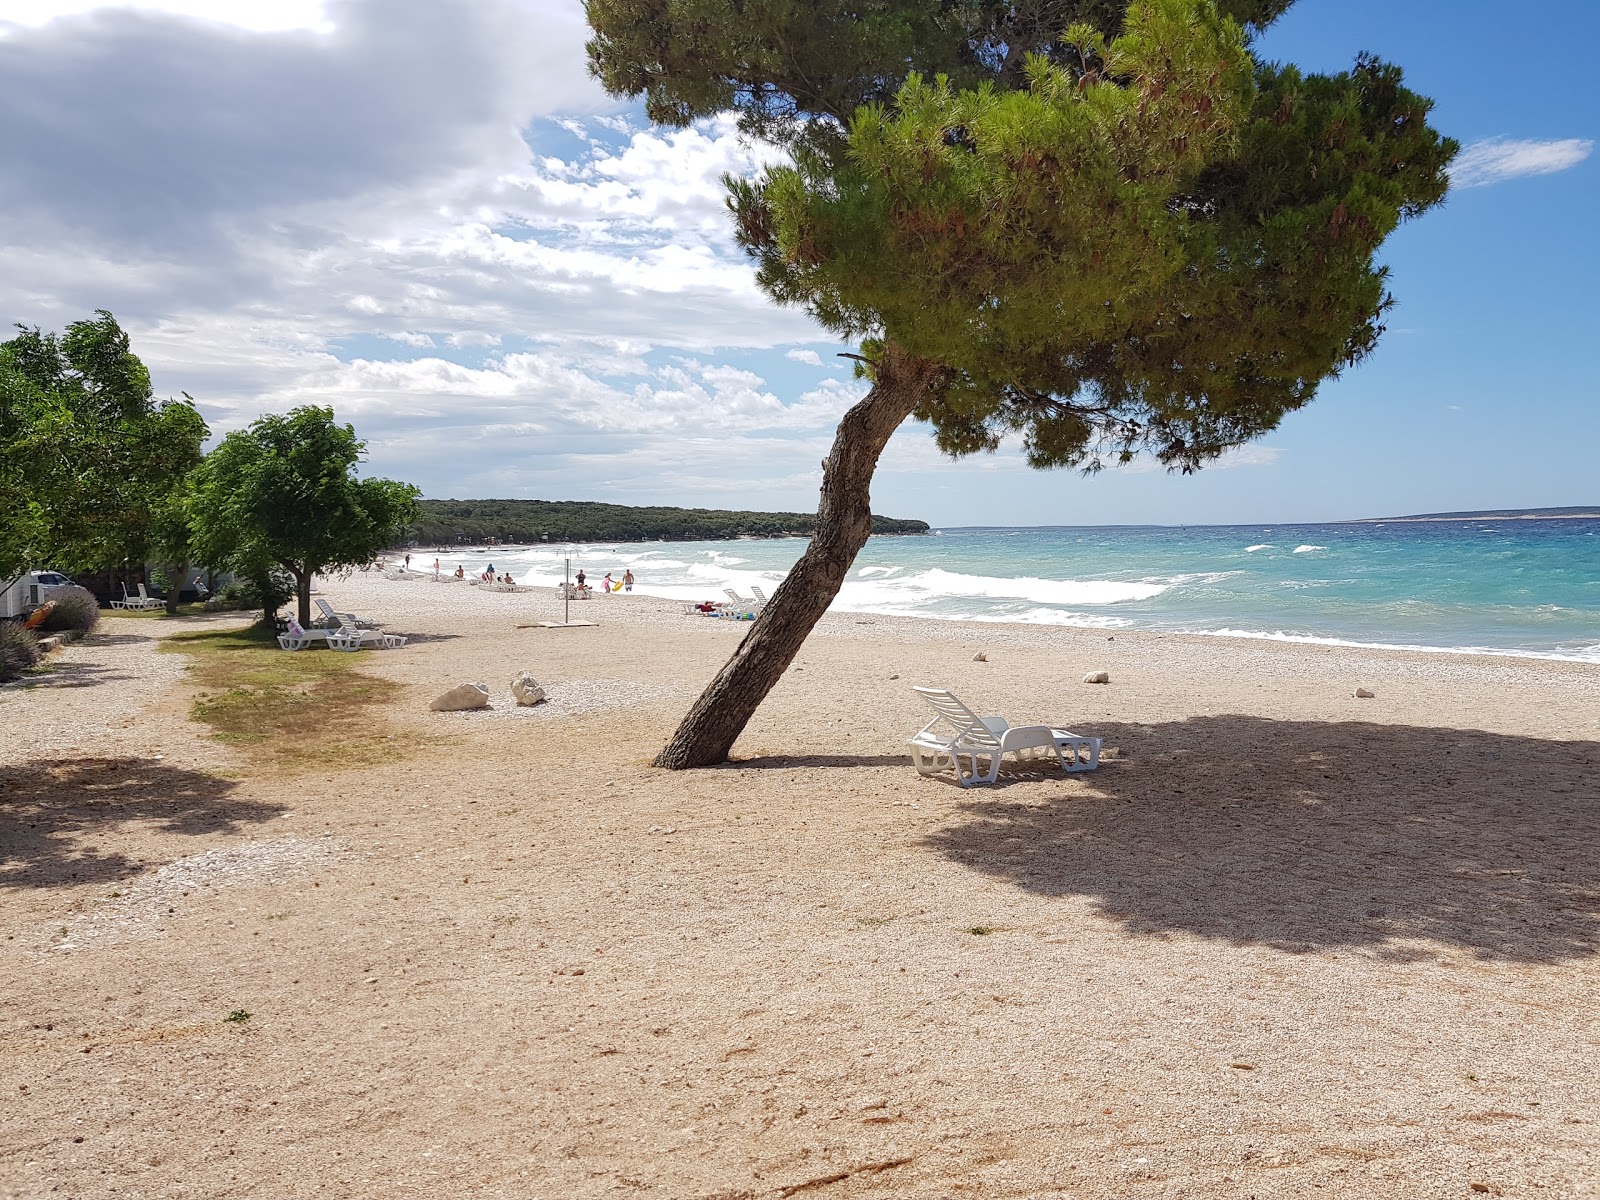 Fotografie cu Strasko beach - locul popular printre cunoscătorii de relaxare